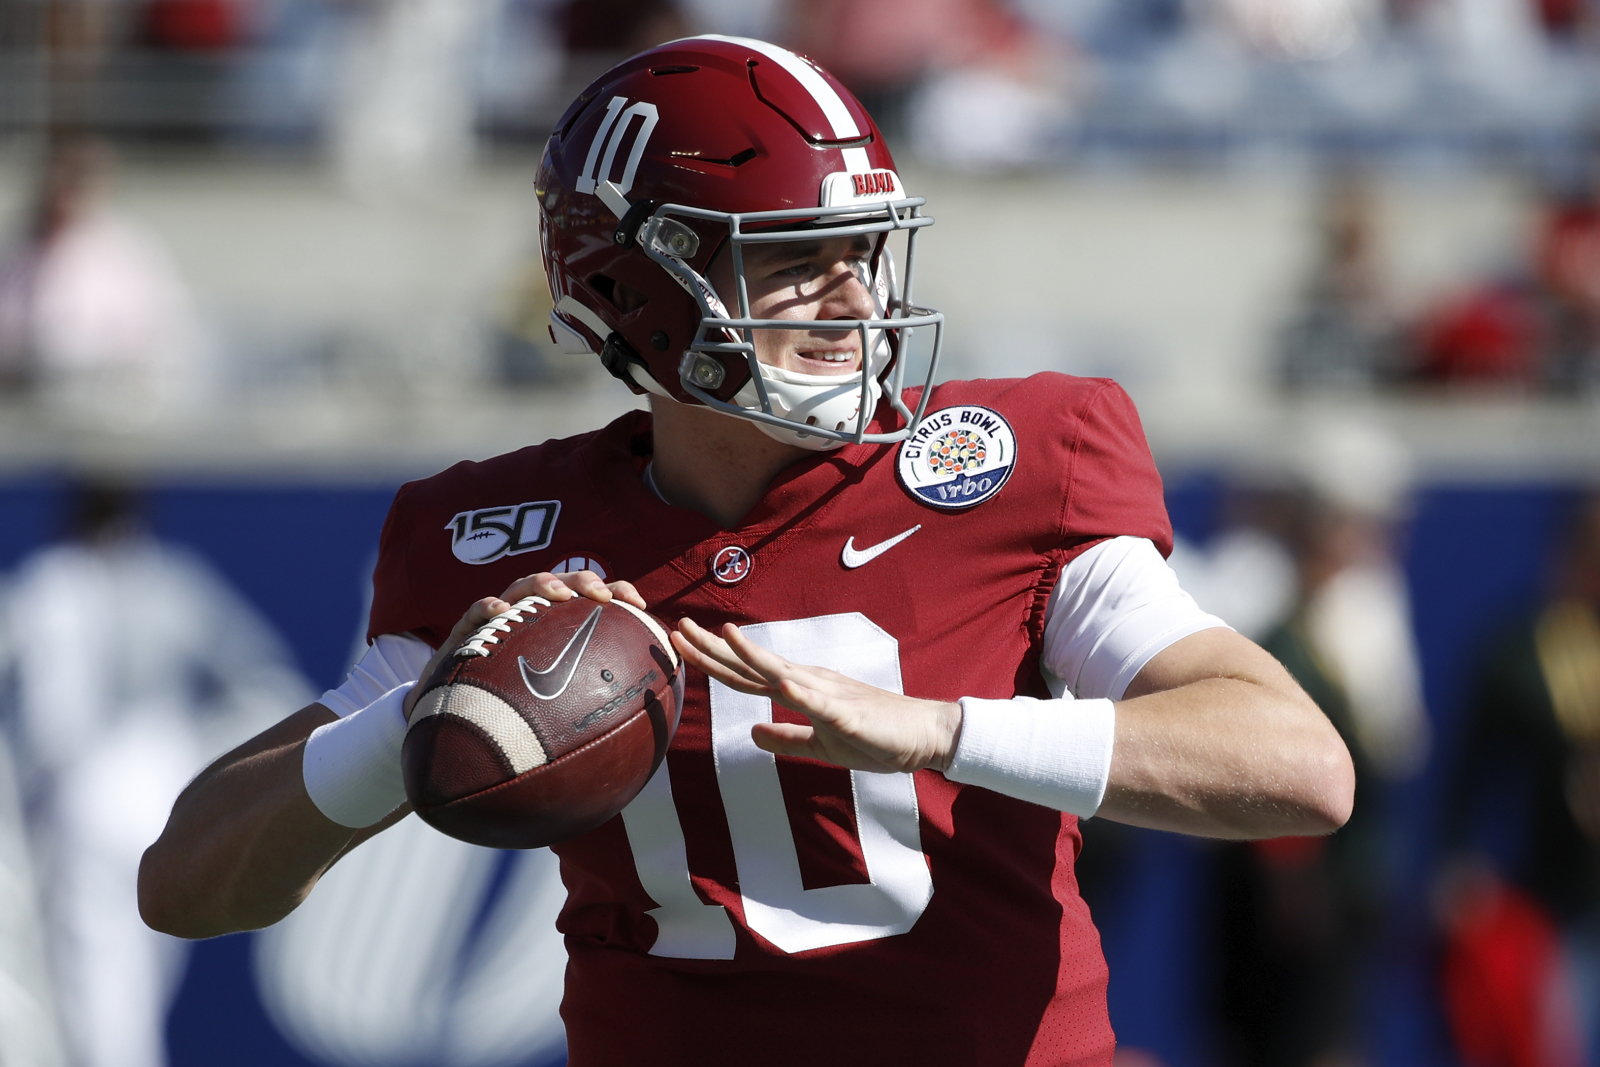 Mac Jones' NFL draft rise leaves lots of questions on Alabama QB